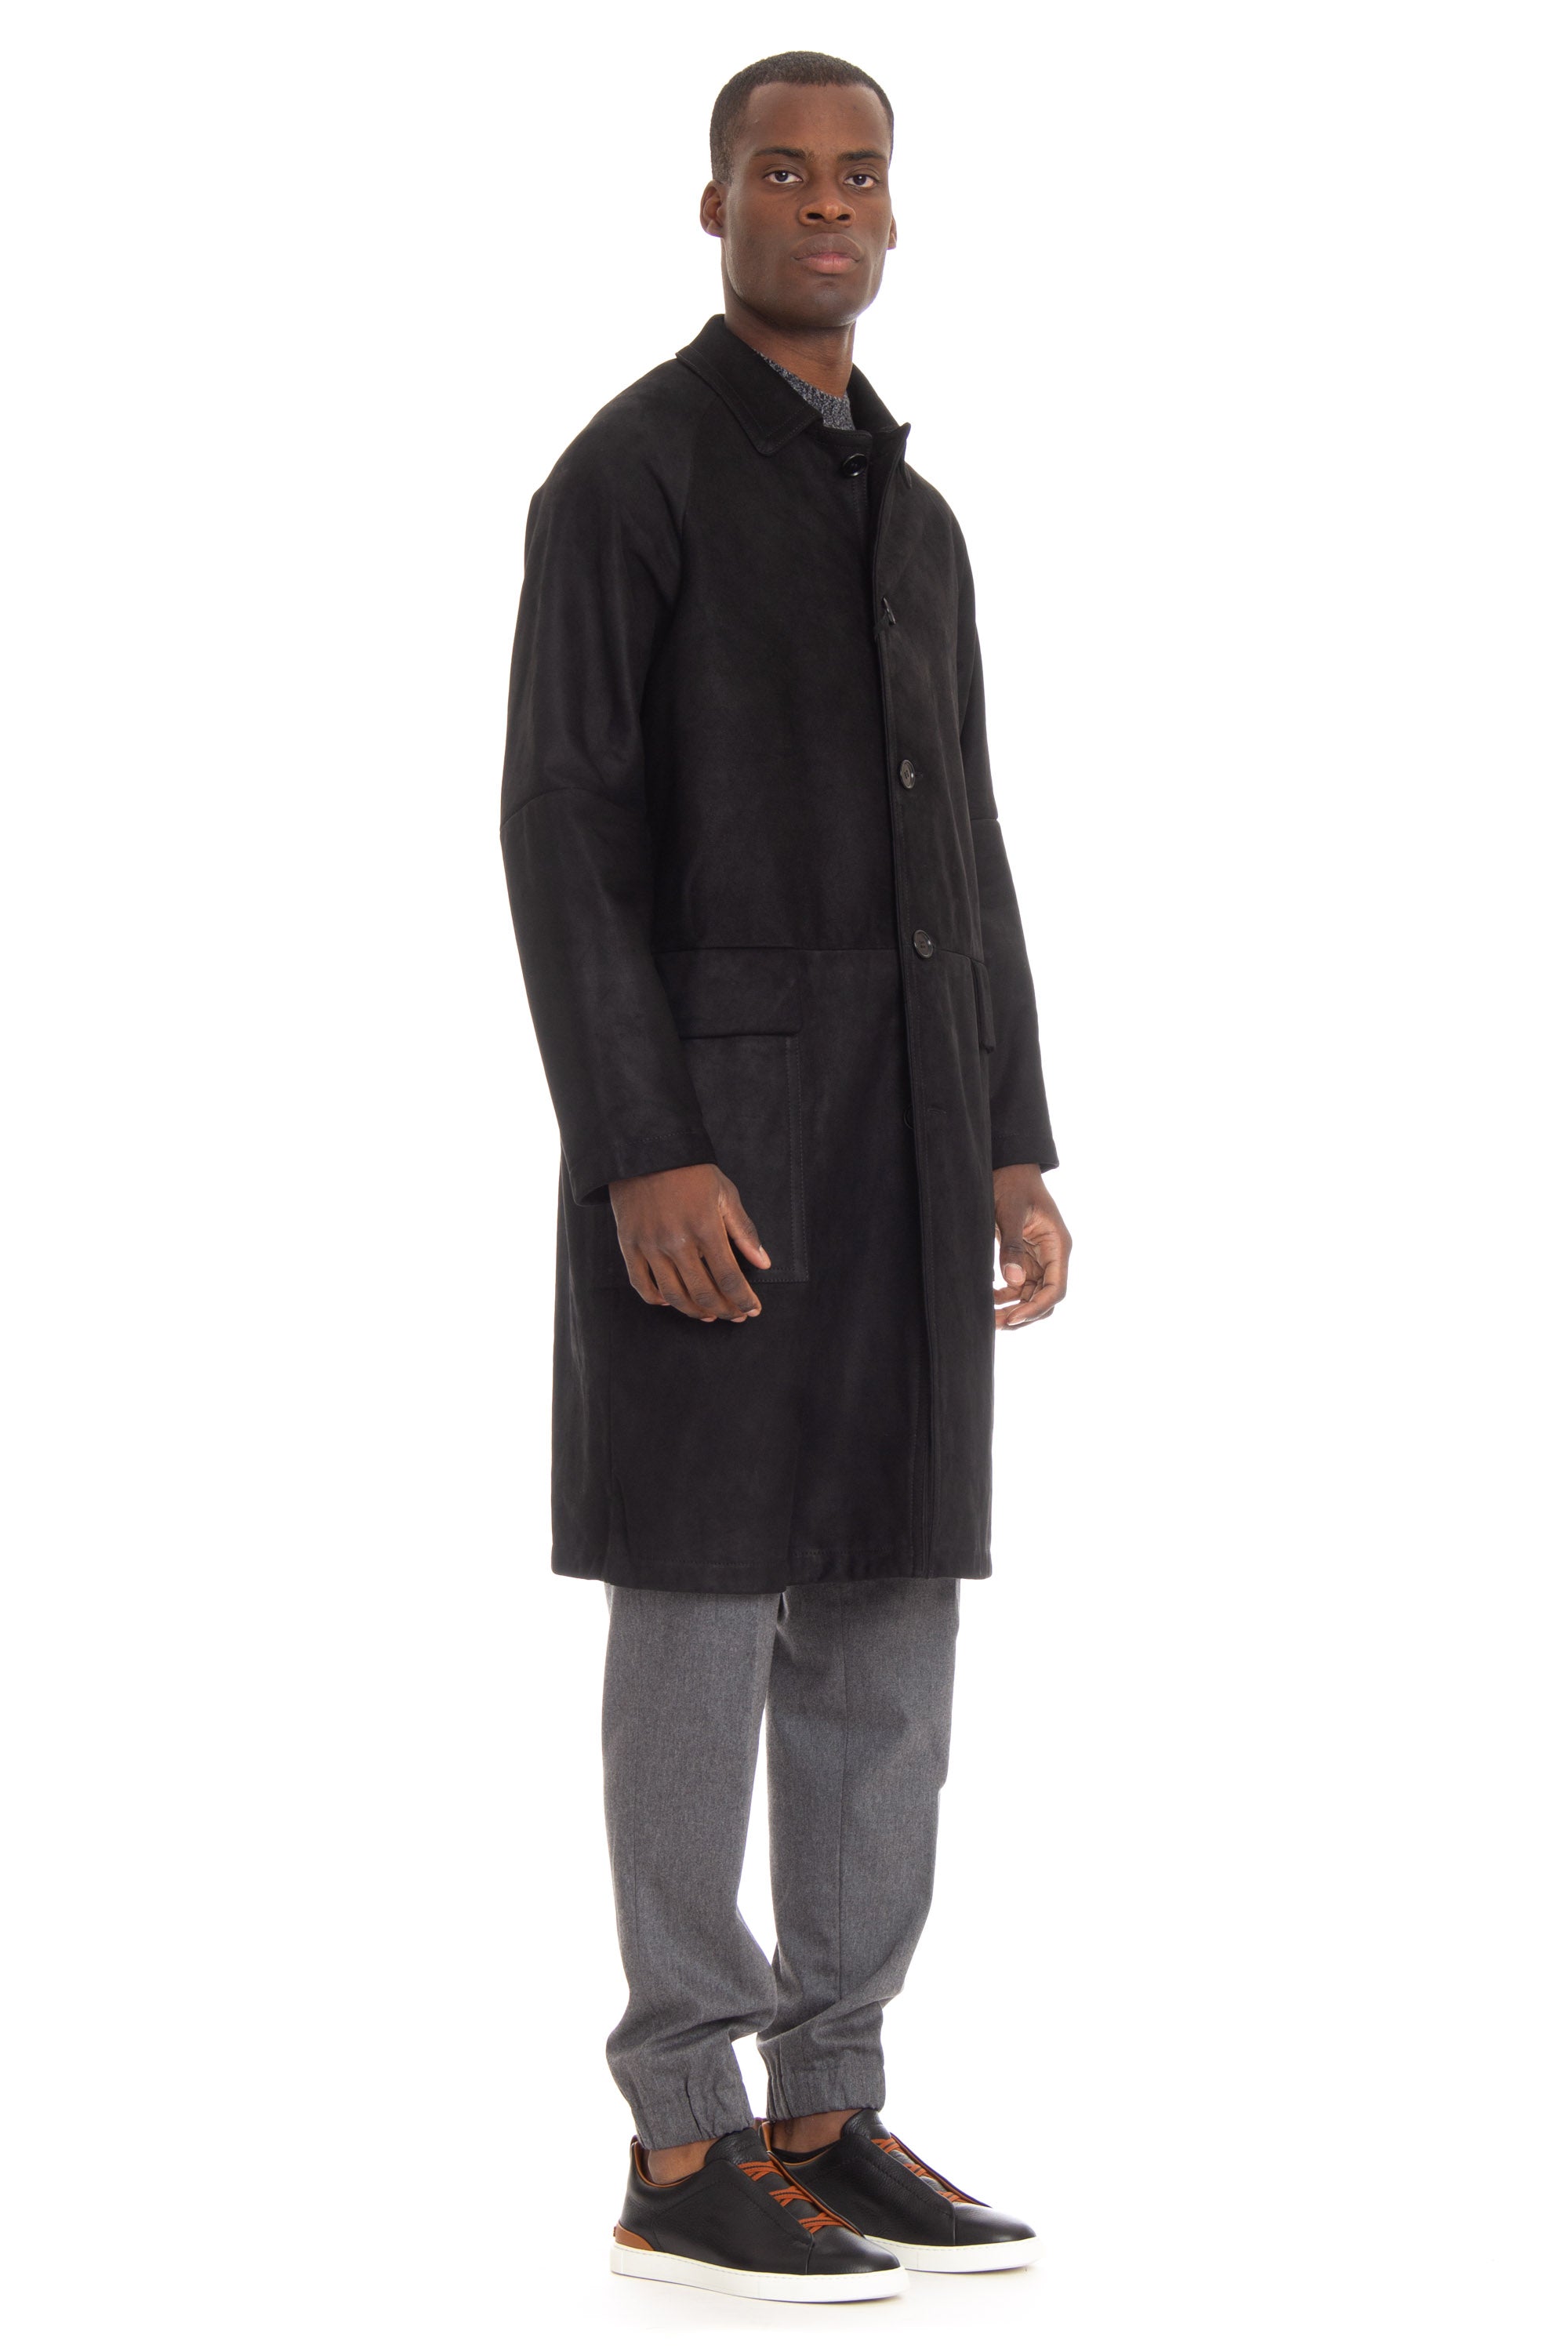 Leather overcoat